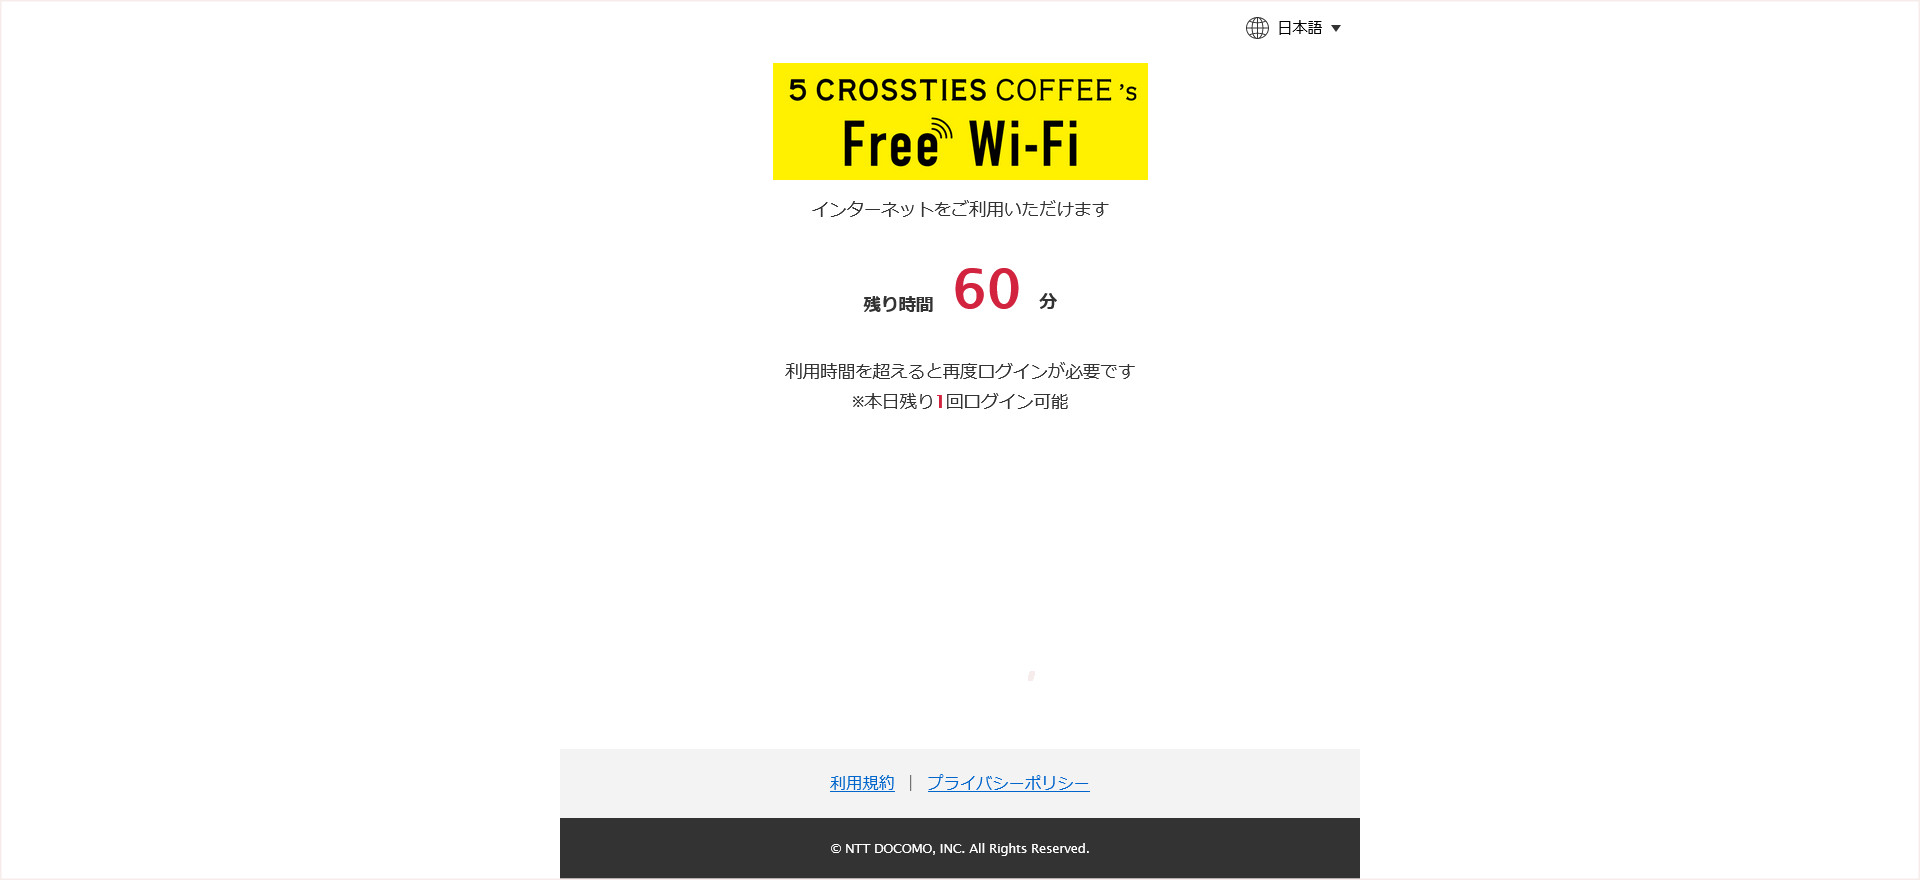 5 CROSSTIES COFFEEの無料Wi-Fi接続